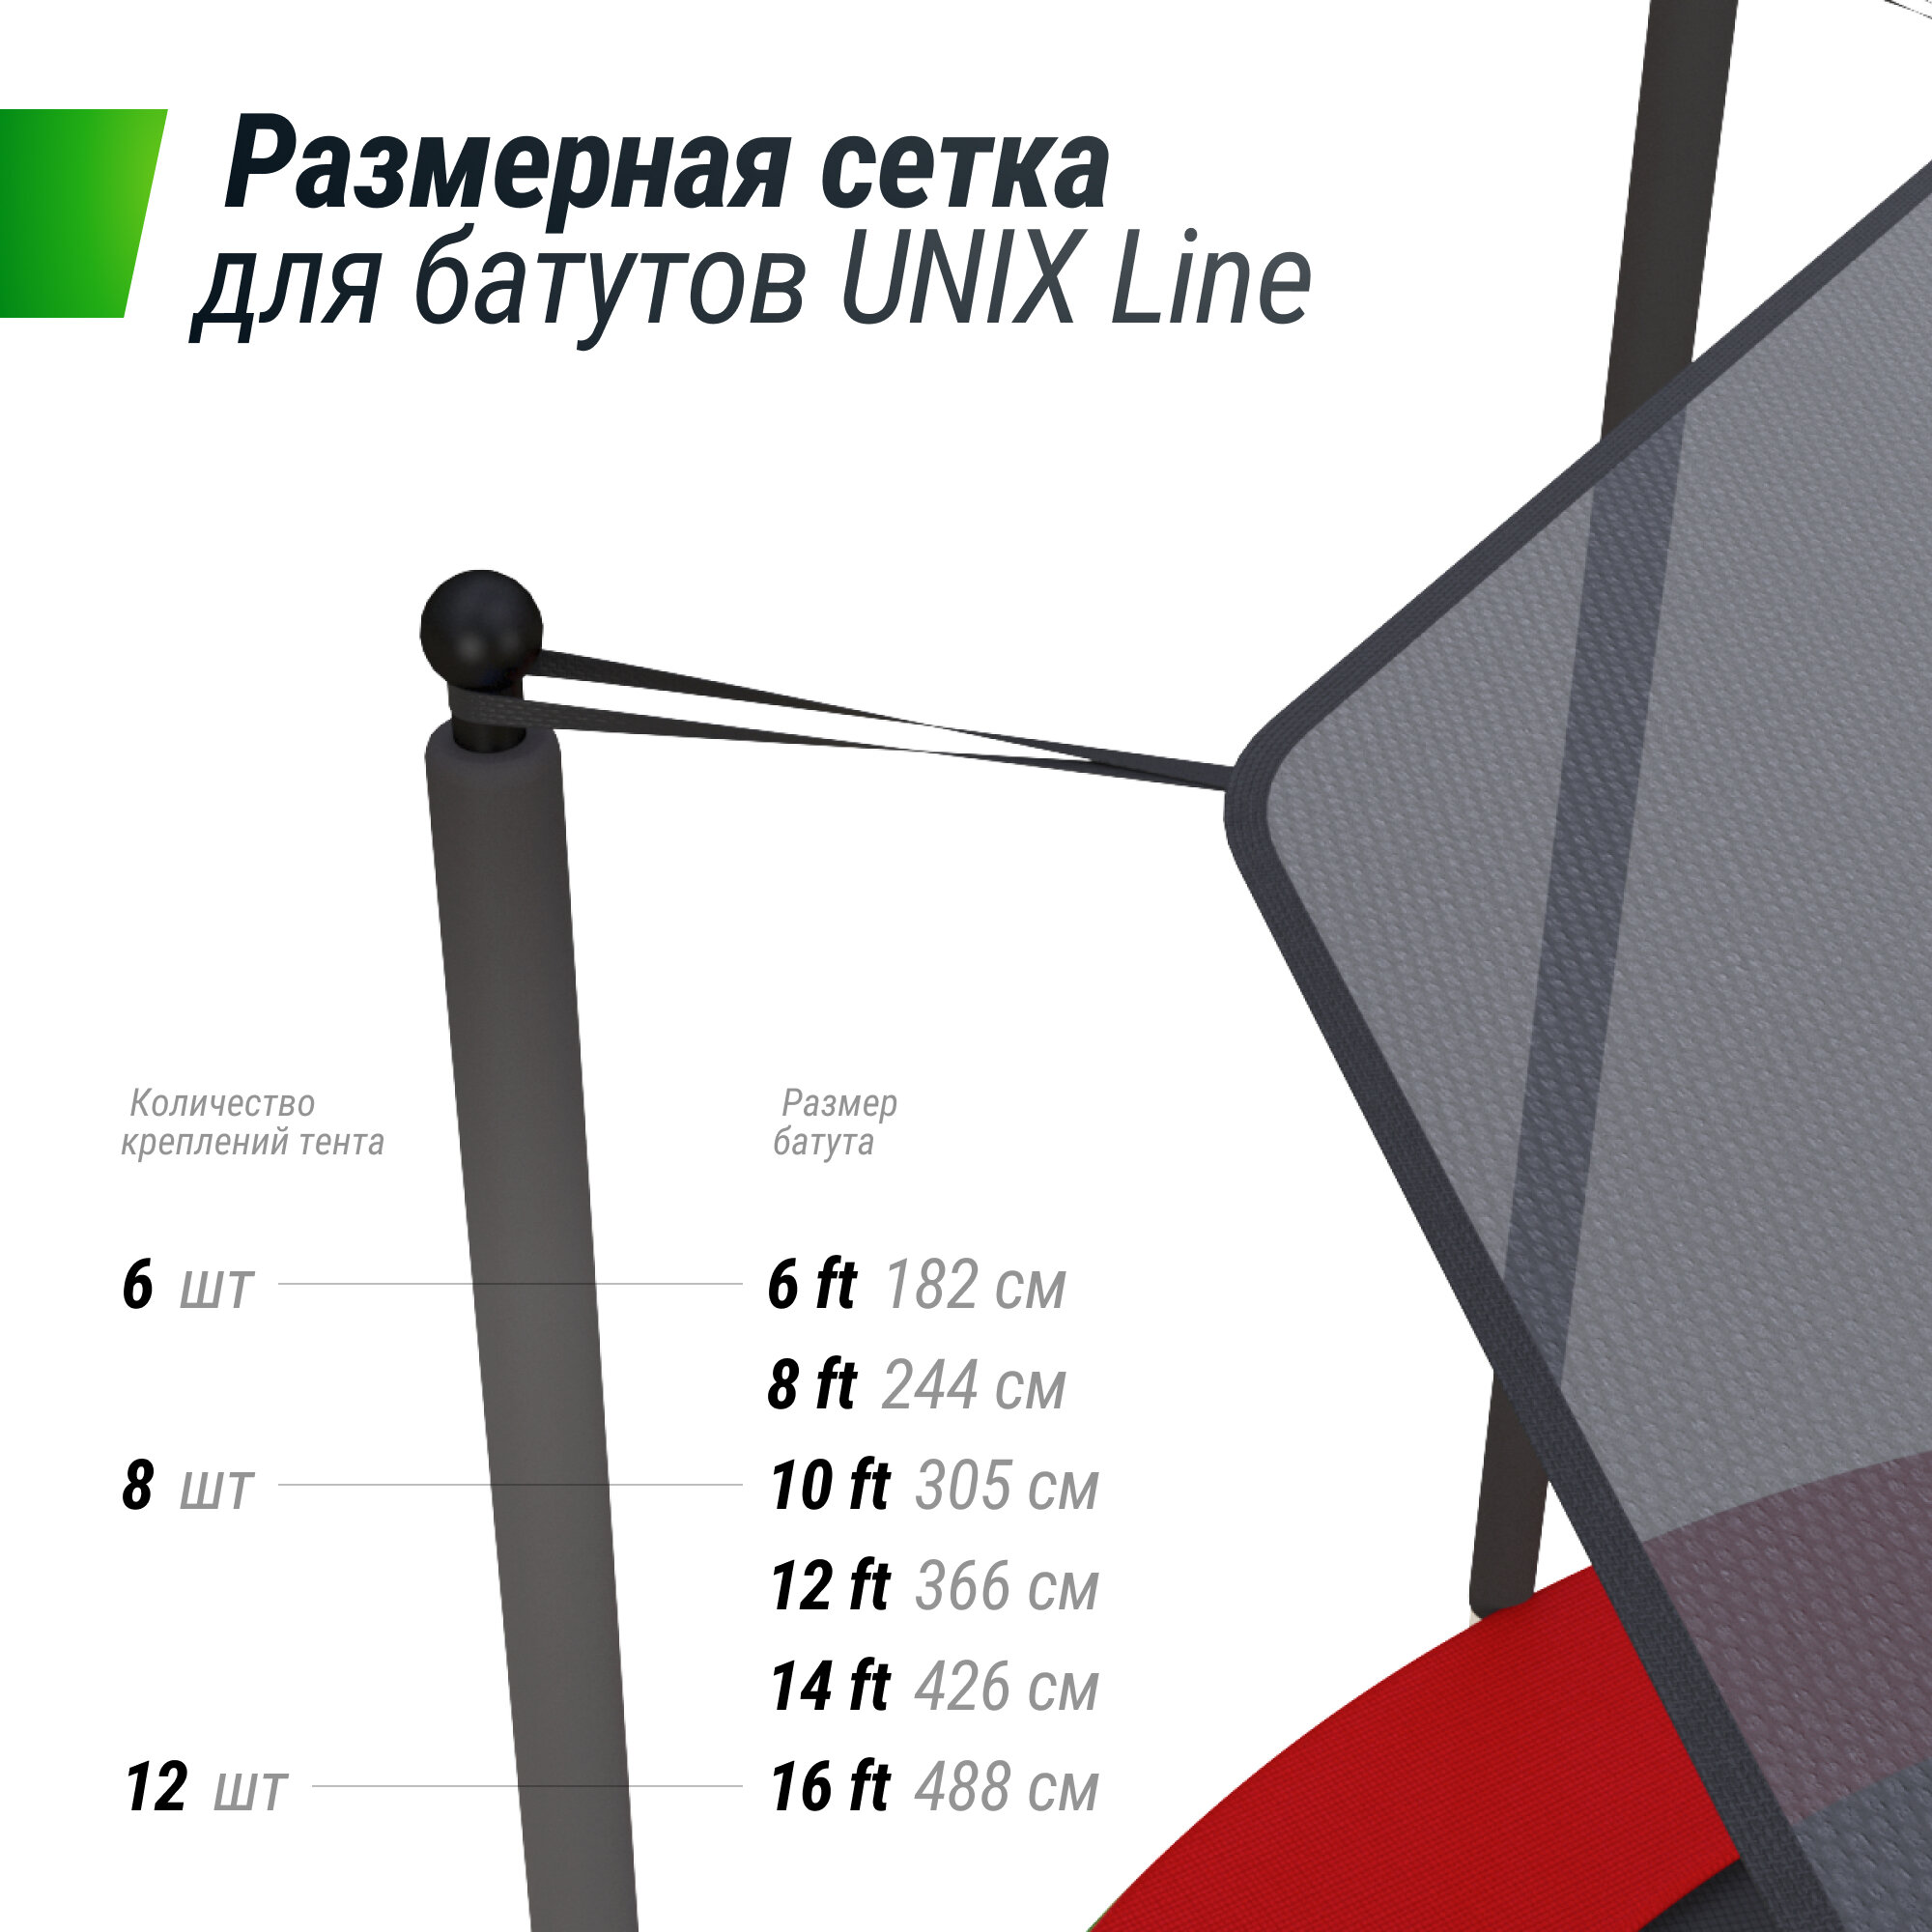 Солнцезащитный тент UNIX Line 426 см (14 ft) UNIXLINE